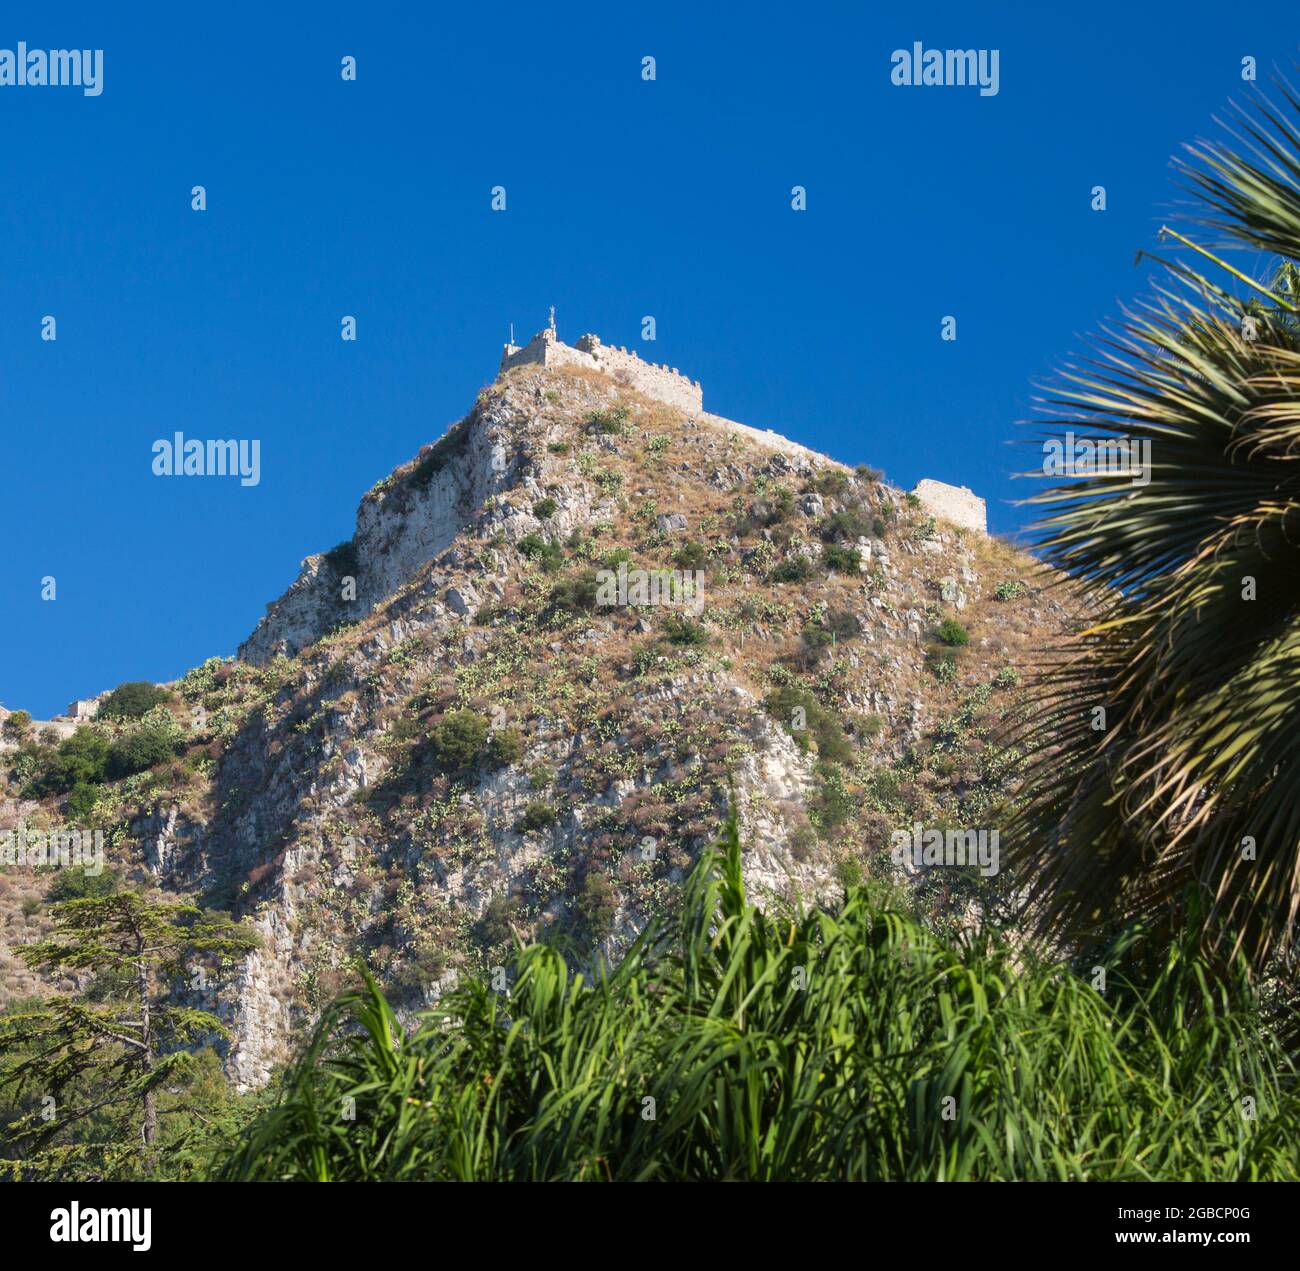 Taormina, Messina, Sicilia, Italia. Vista en ángulo bajo del castillo de Saracén en ruinas desde los jardines públicos de la Villa Comunale. Foto de stock